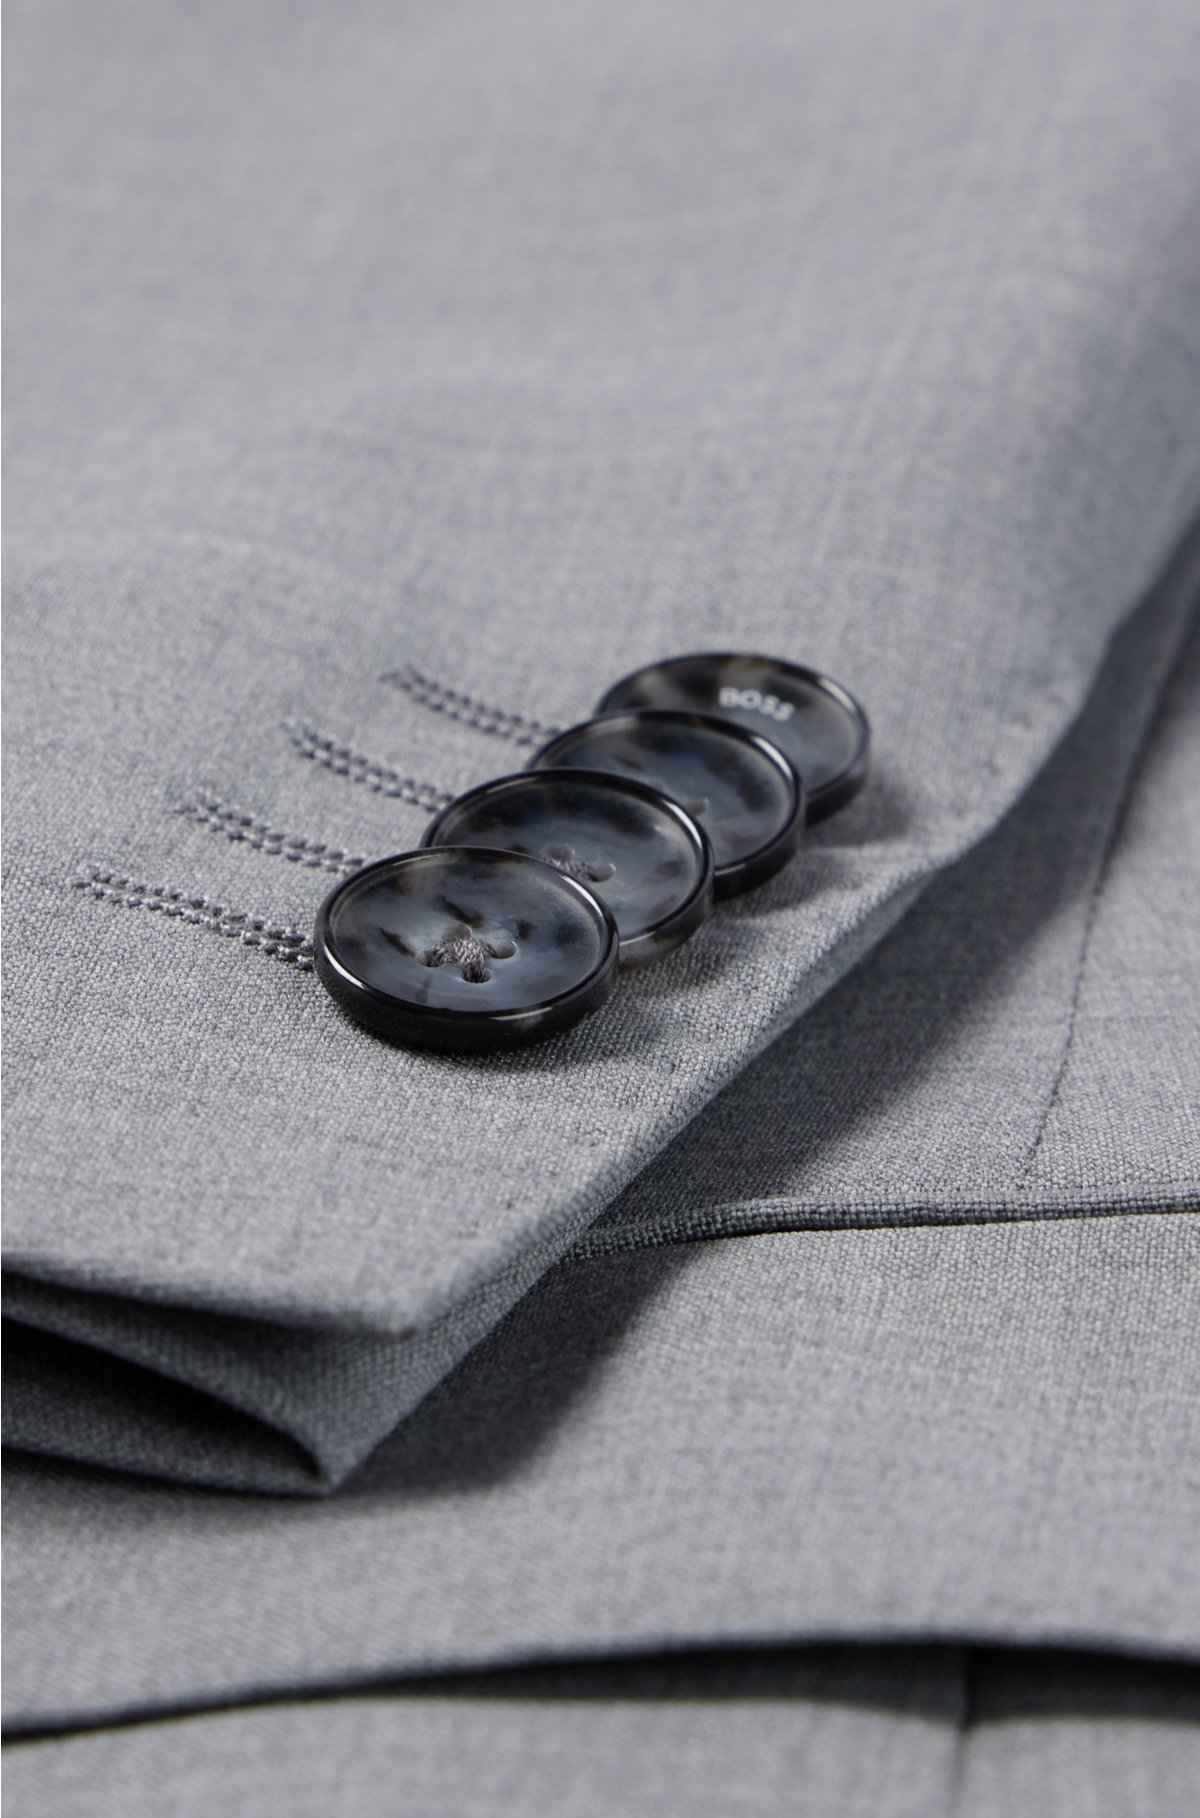 BOSS - Slim-fit suit in melange stretch virgin wool